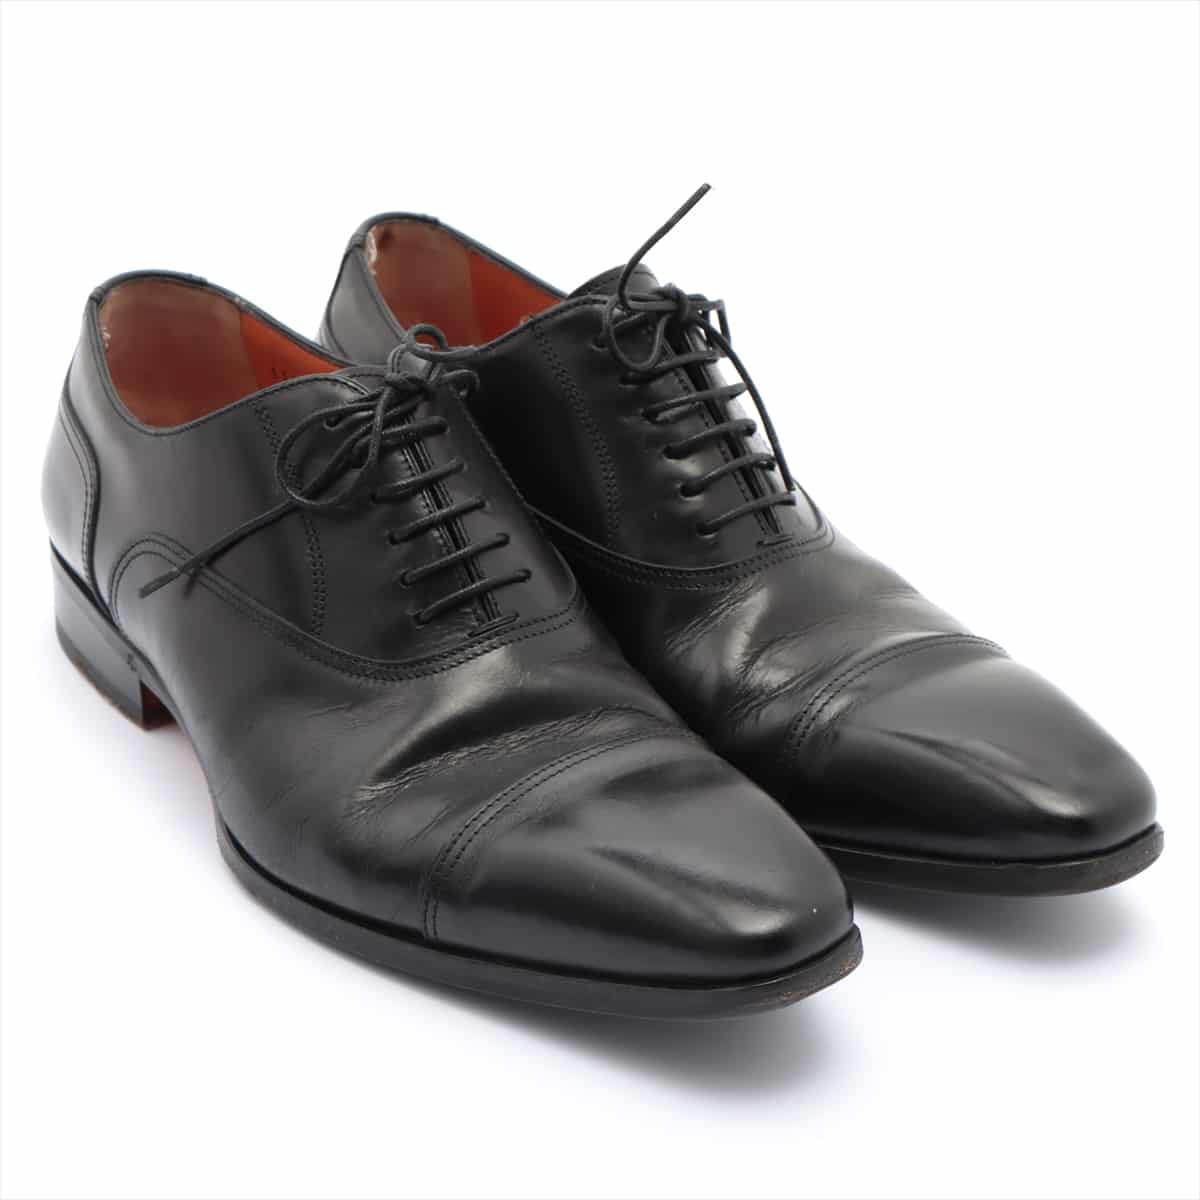 Santoni Leather Leather shoes 5 1/2 Men's Black